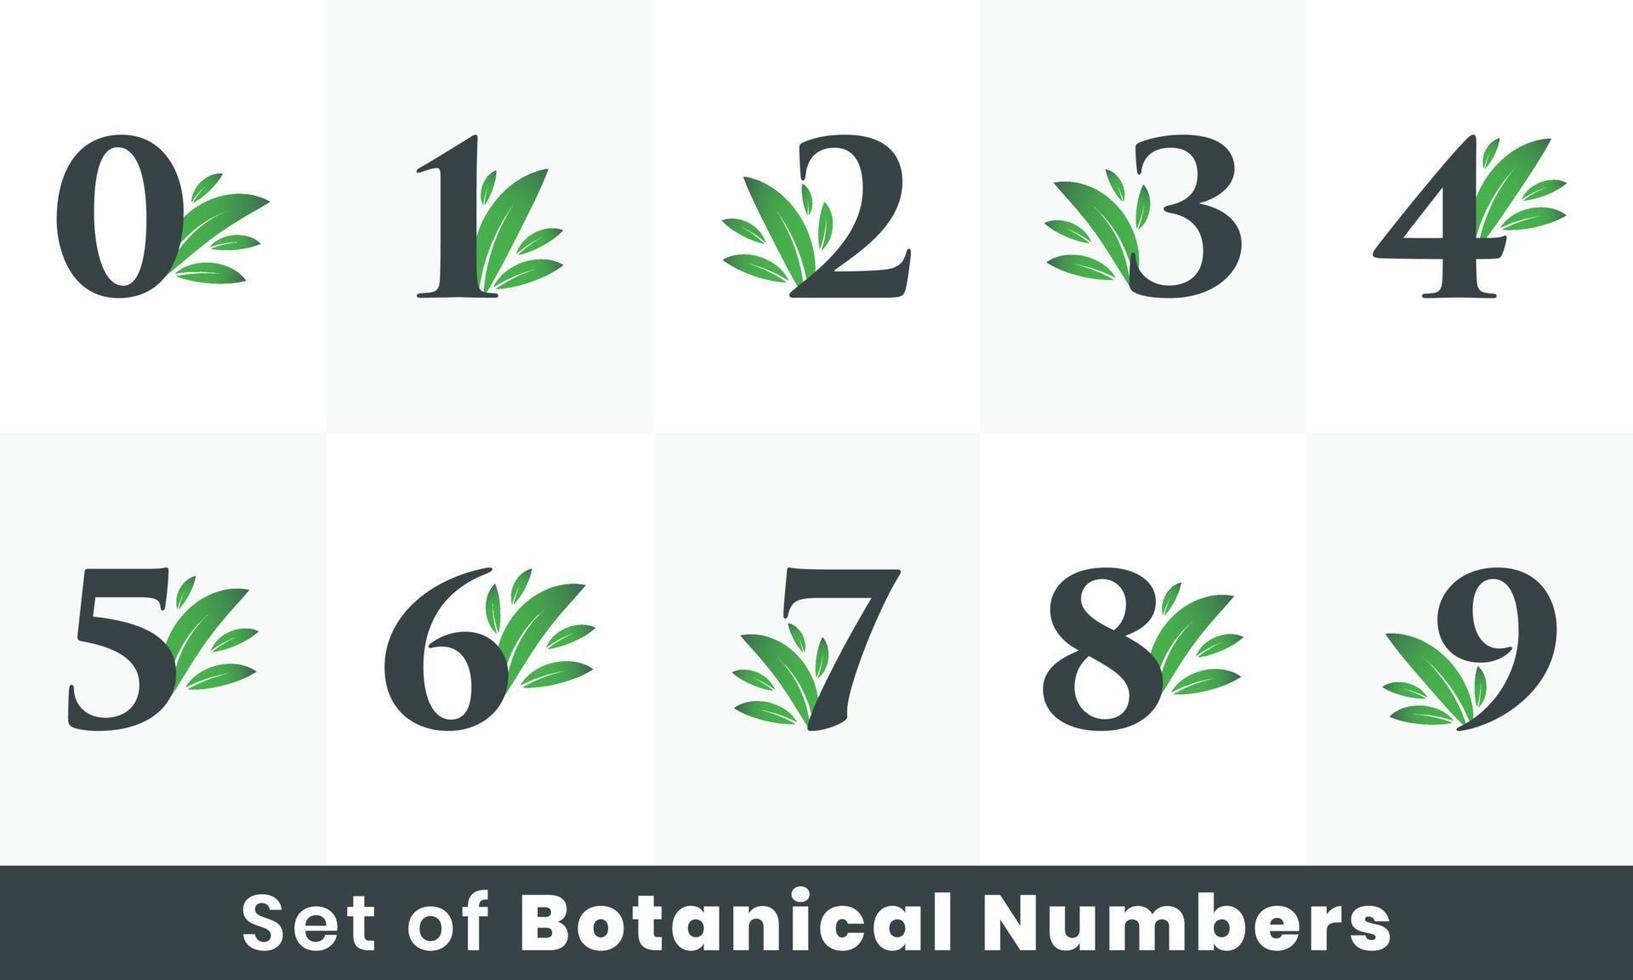 Botanical Leaf Number logo bundle. Green Natural Number logo set A to Z vector